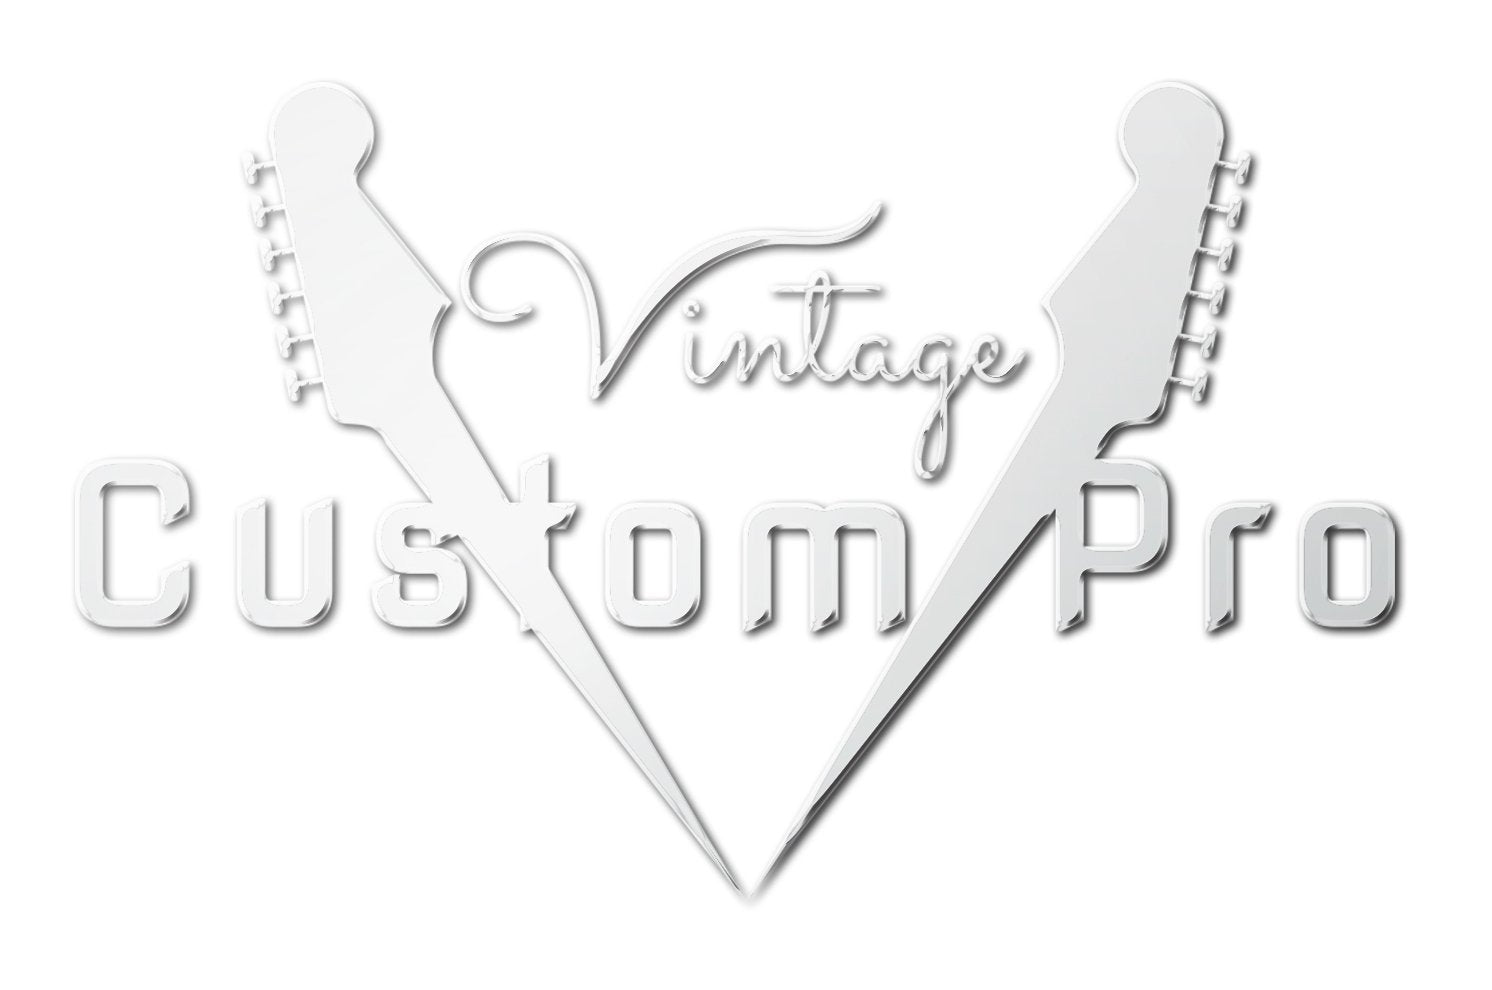 Vintage* V100AFD Electric Guitar, Electric Guitar for sale at Richards Guitars.